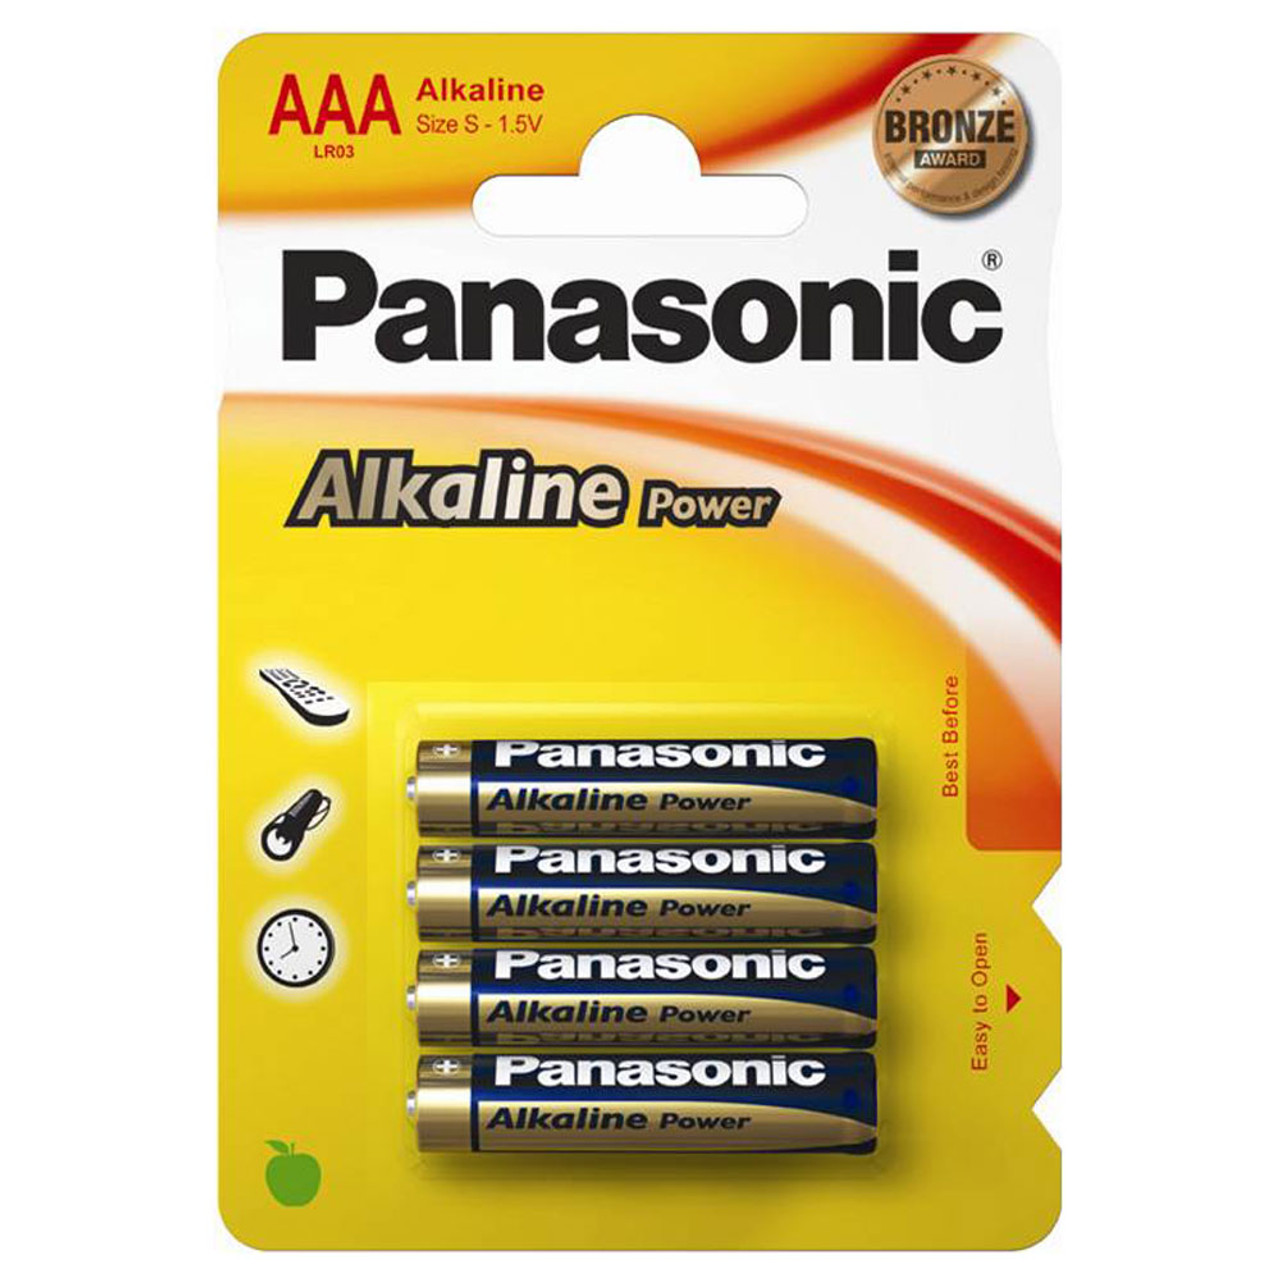 Panasonic Alkaline Power (Bronze) AAA LR03 Batteries | 4 Pack